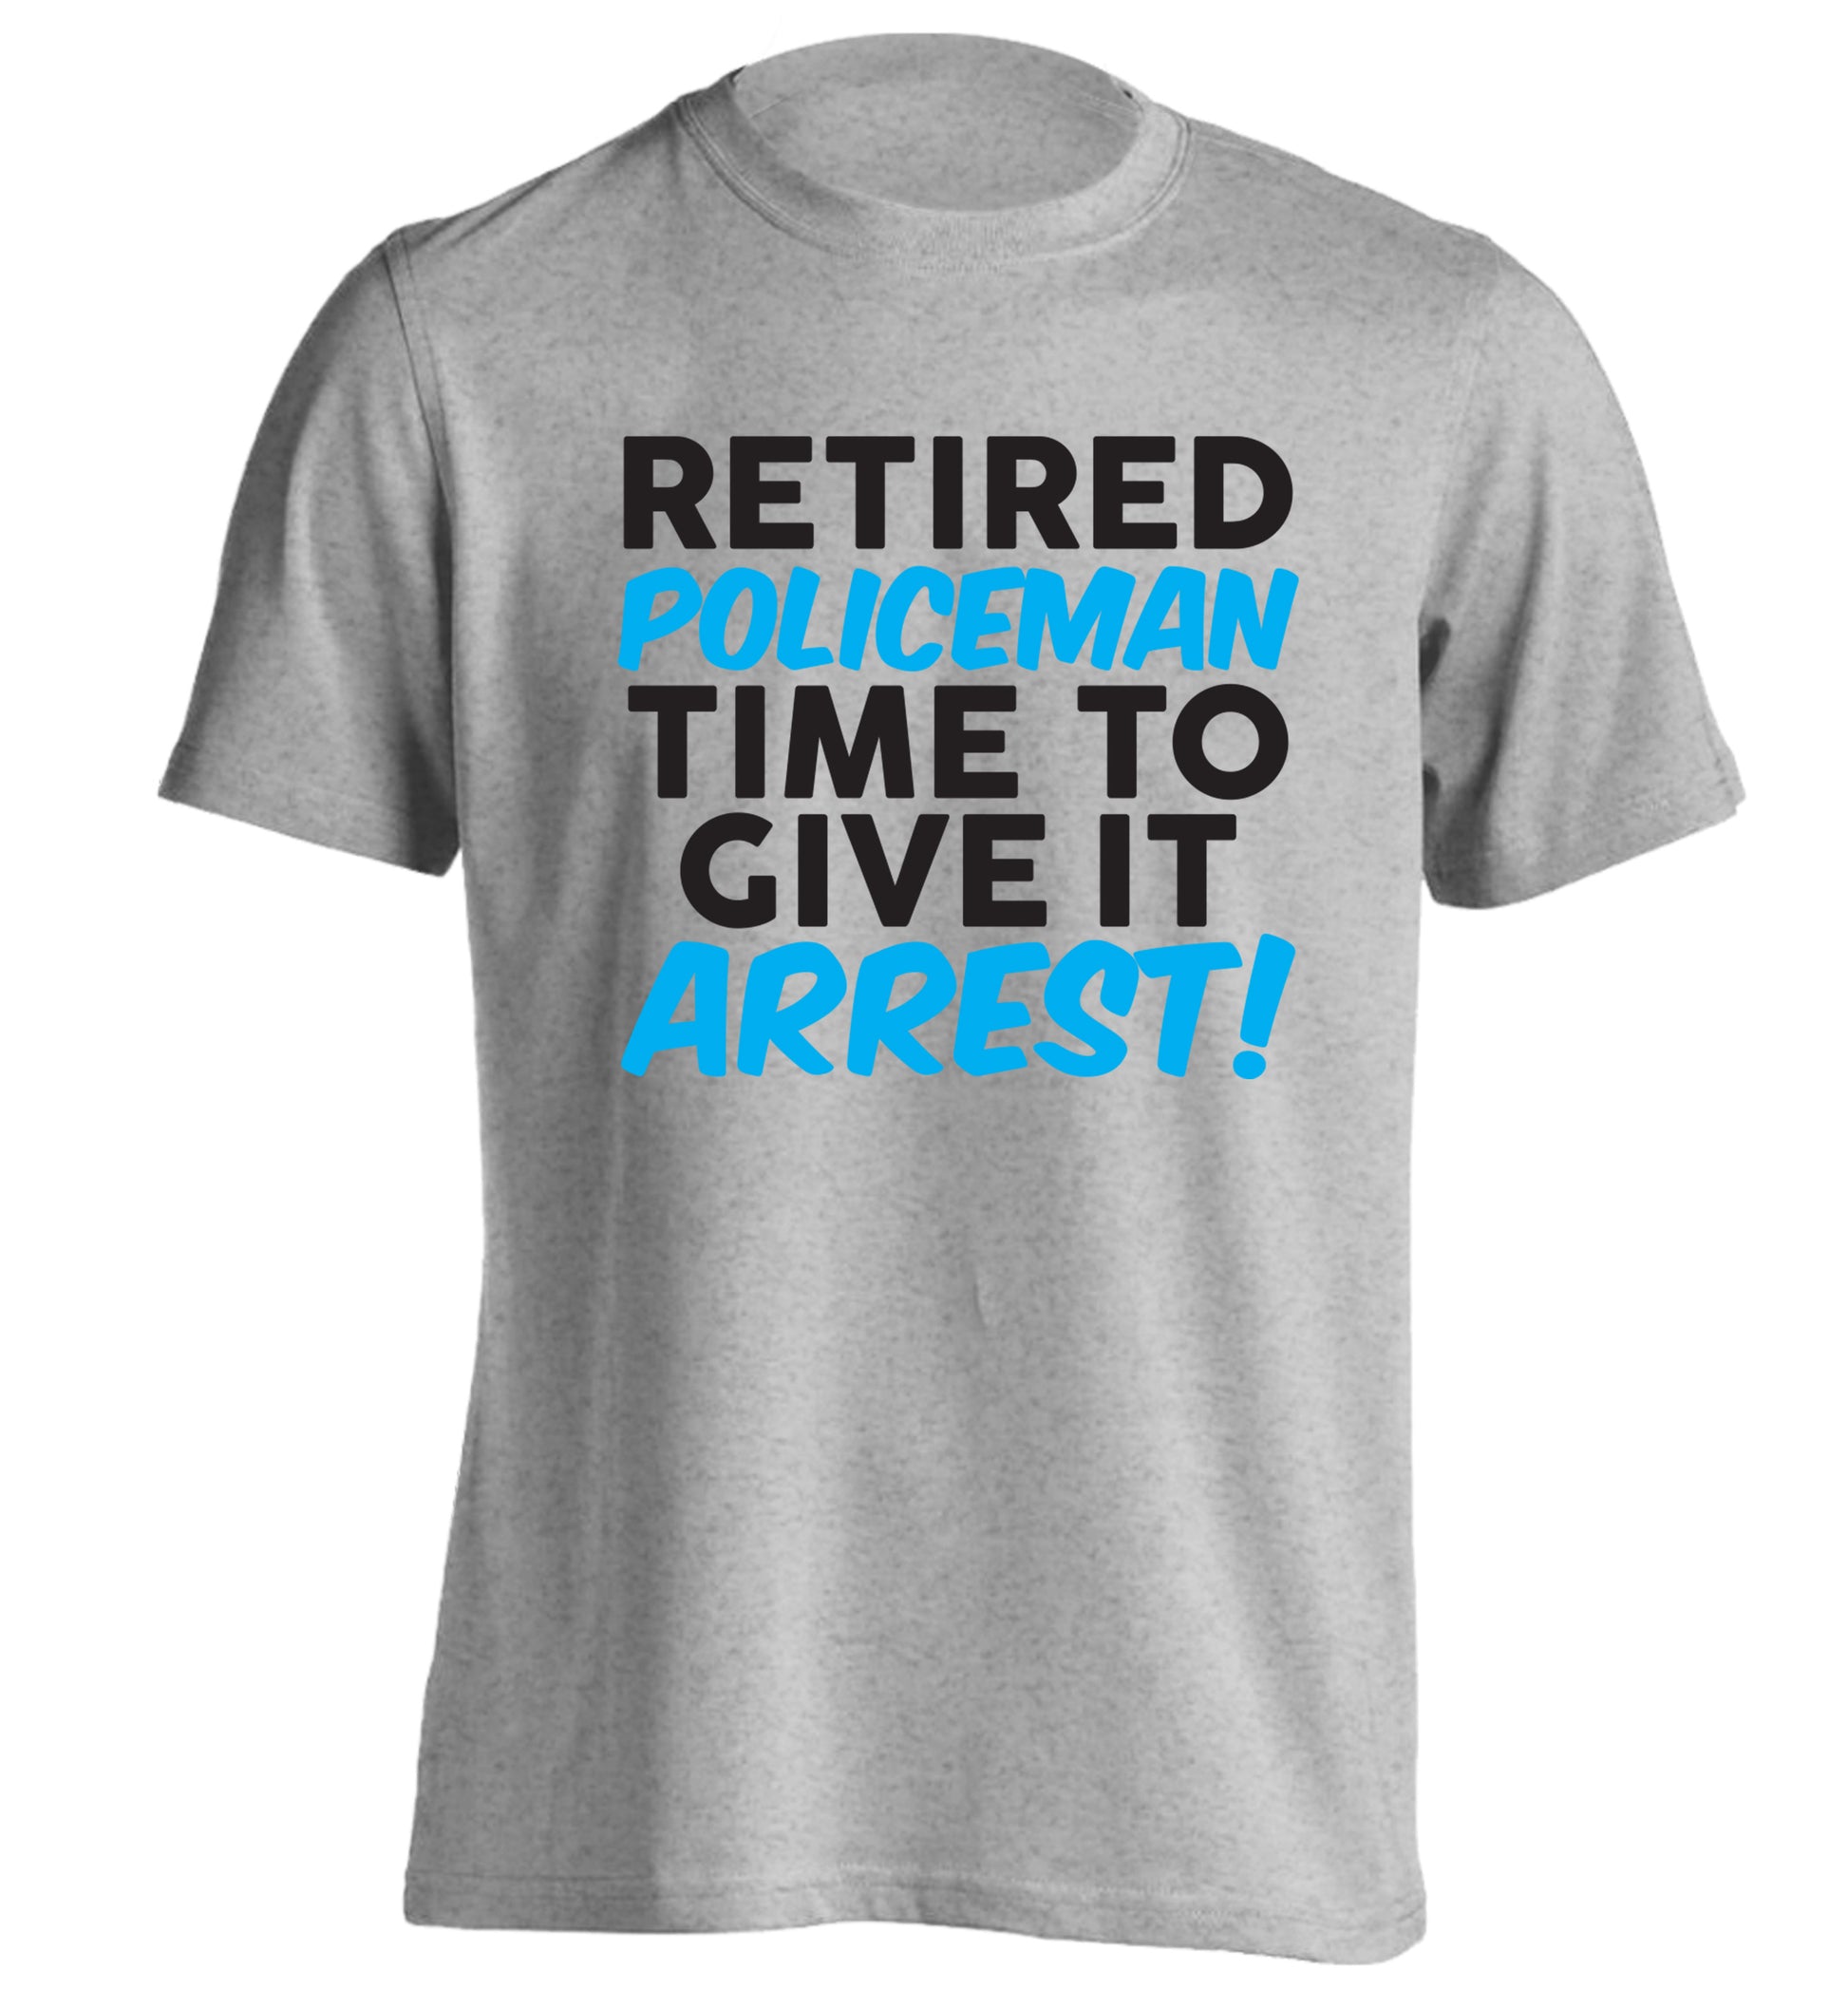 Retired policeman give it arresst! adults unisex grey Tshirt 2XL